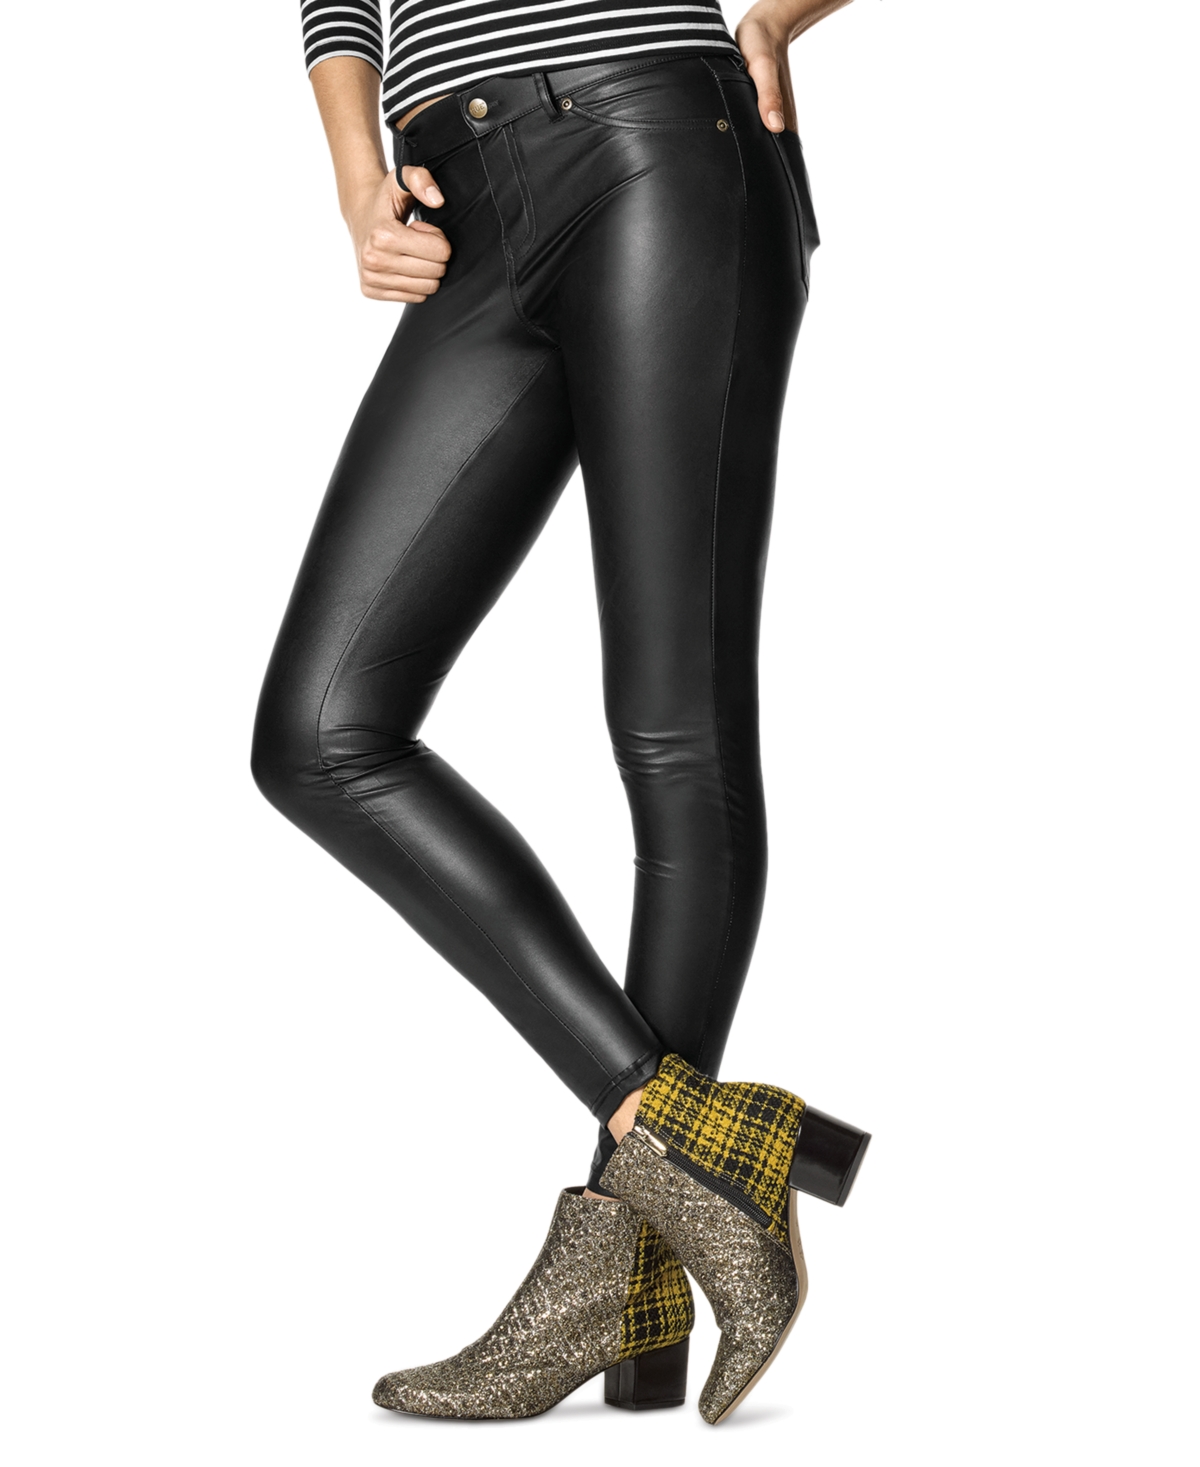 Women's Faux-Leather Leggings - Black